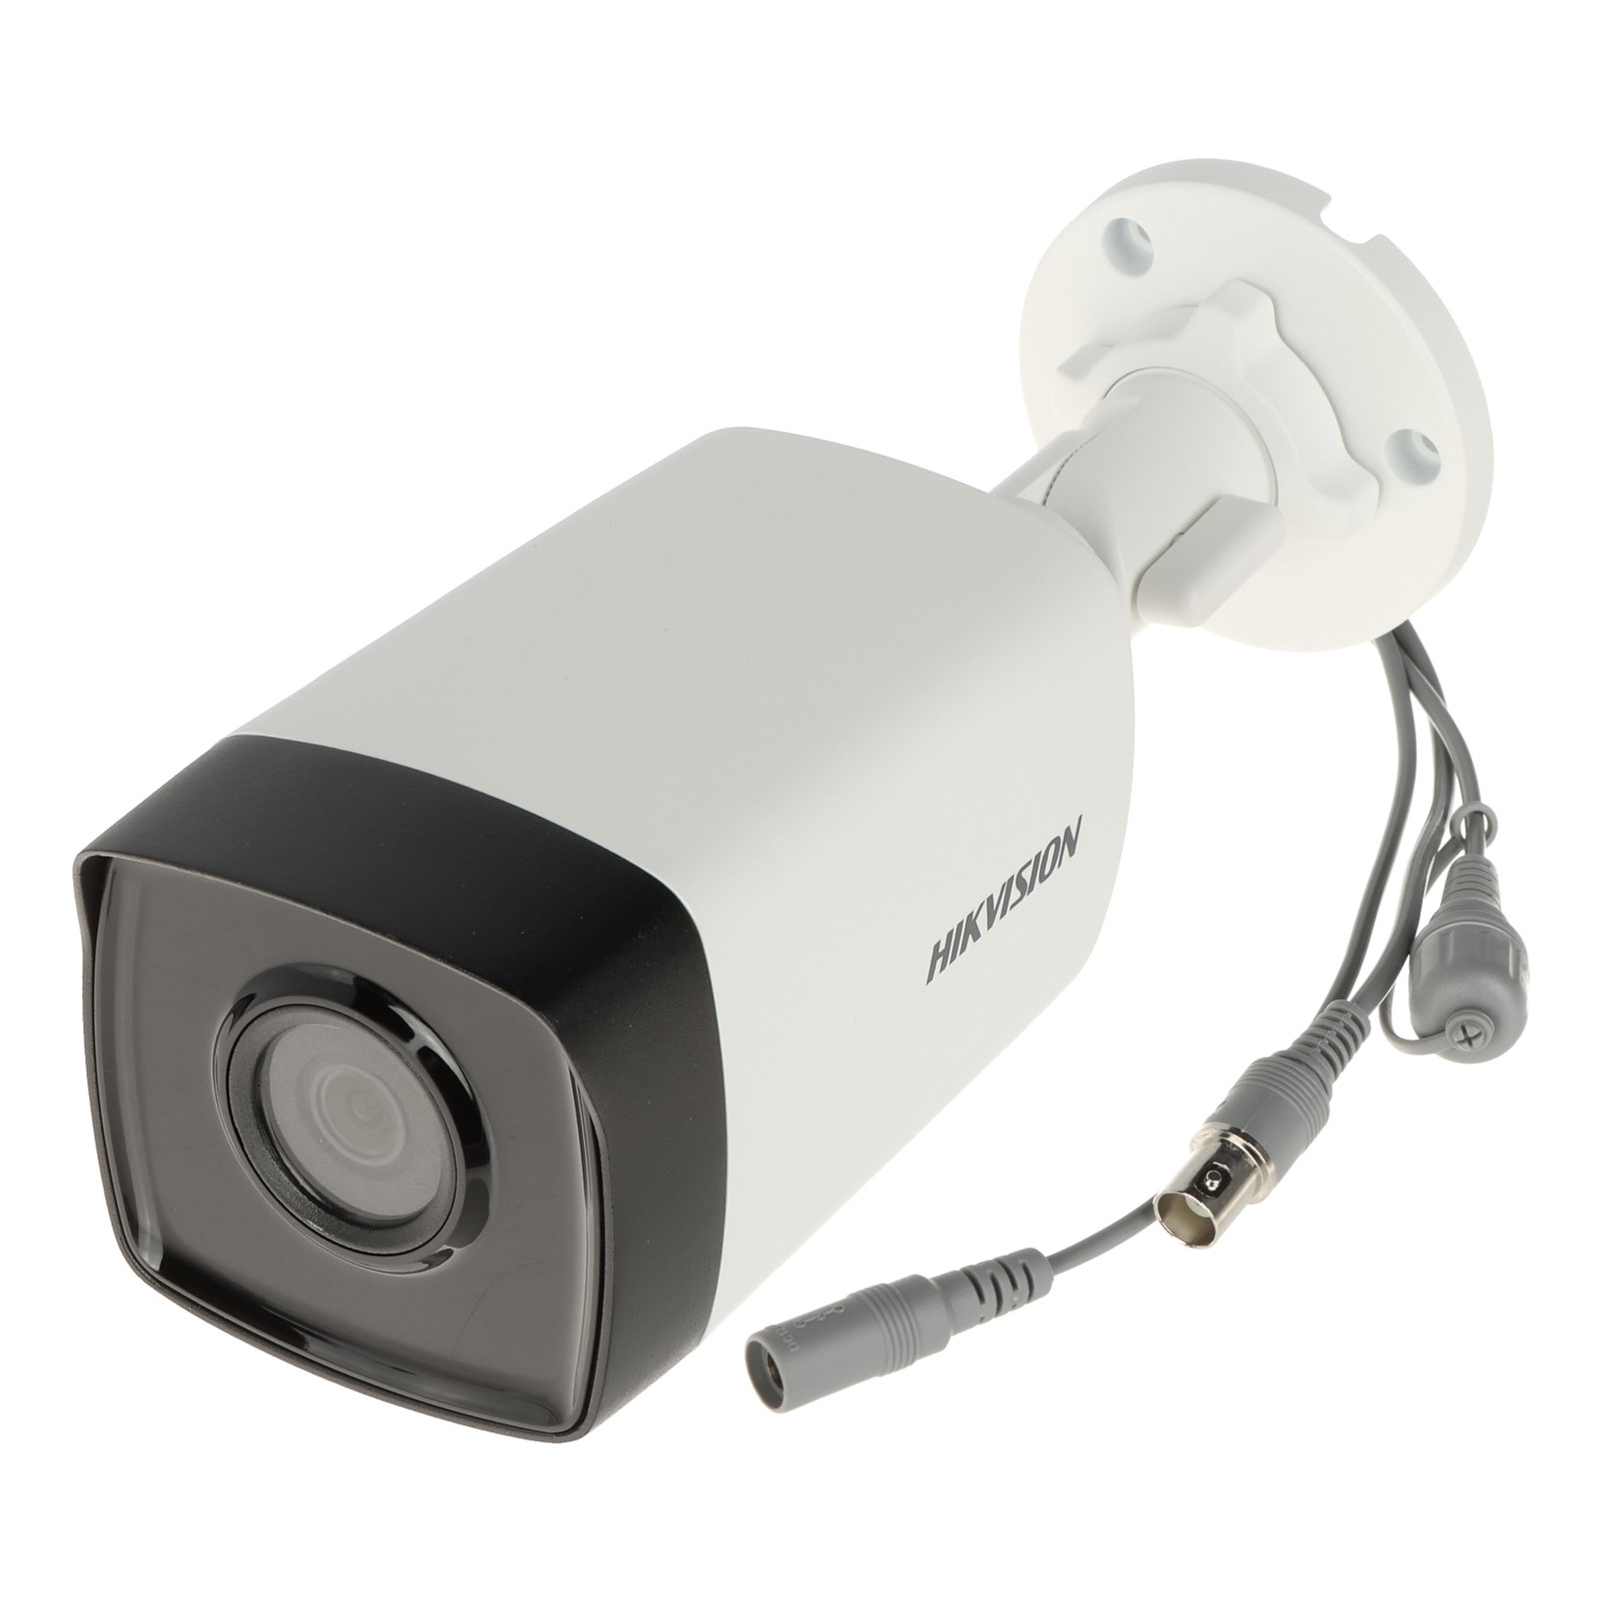 Камера видеонаблюдения Hikvision DS-2CE17D0T-IT3F(C)(2.8)